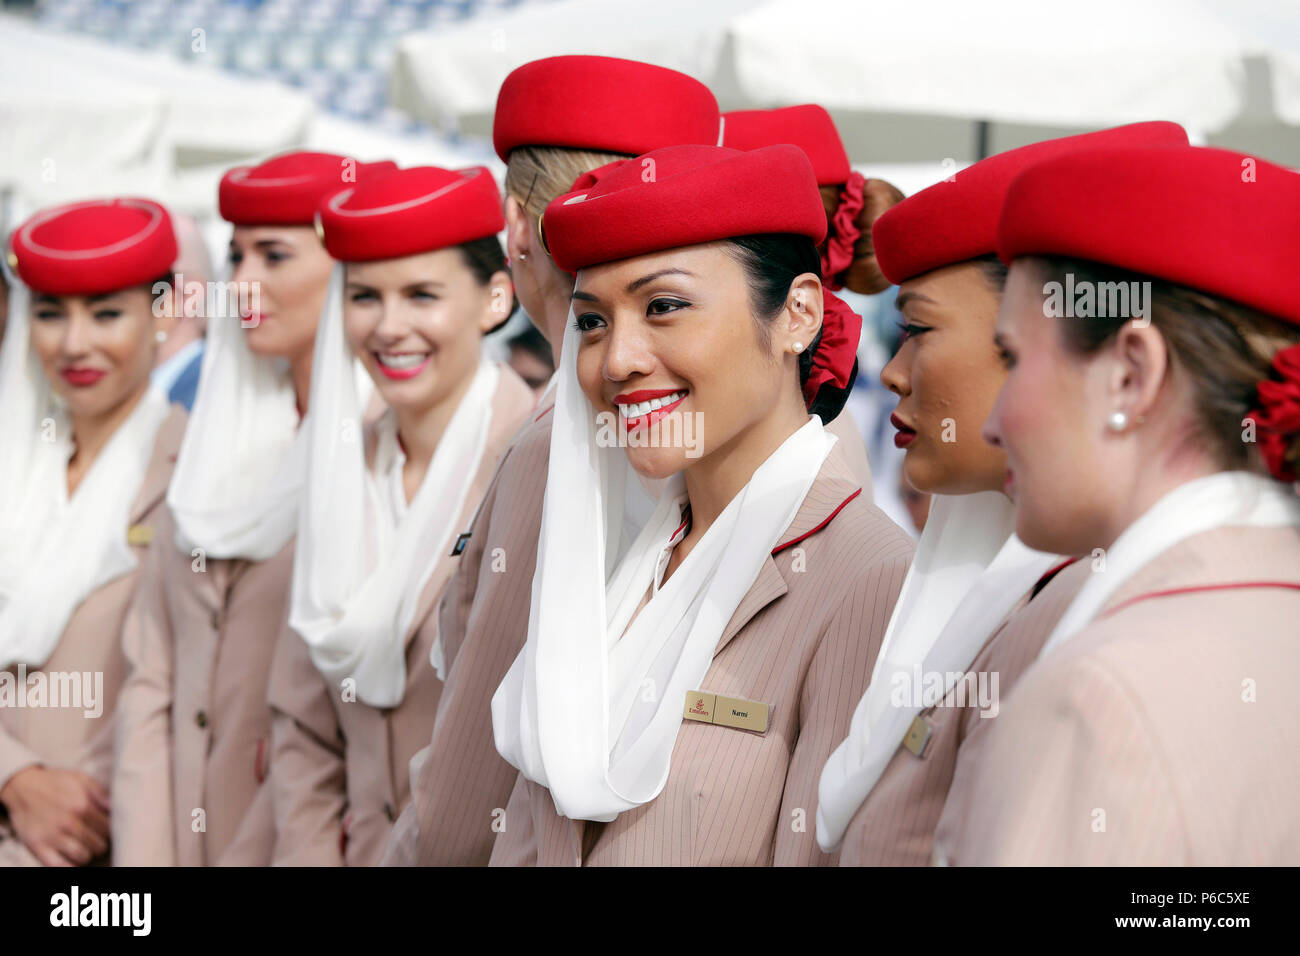 Dubai, United Arab Emirates, stewardess of the airline Emirates Stock Photo